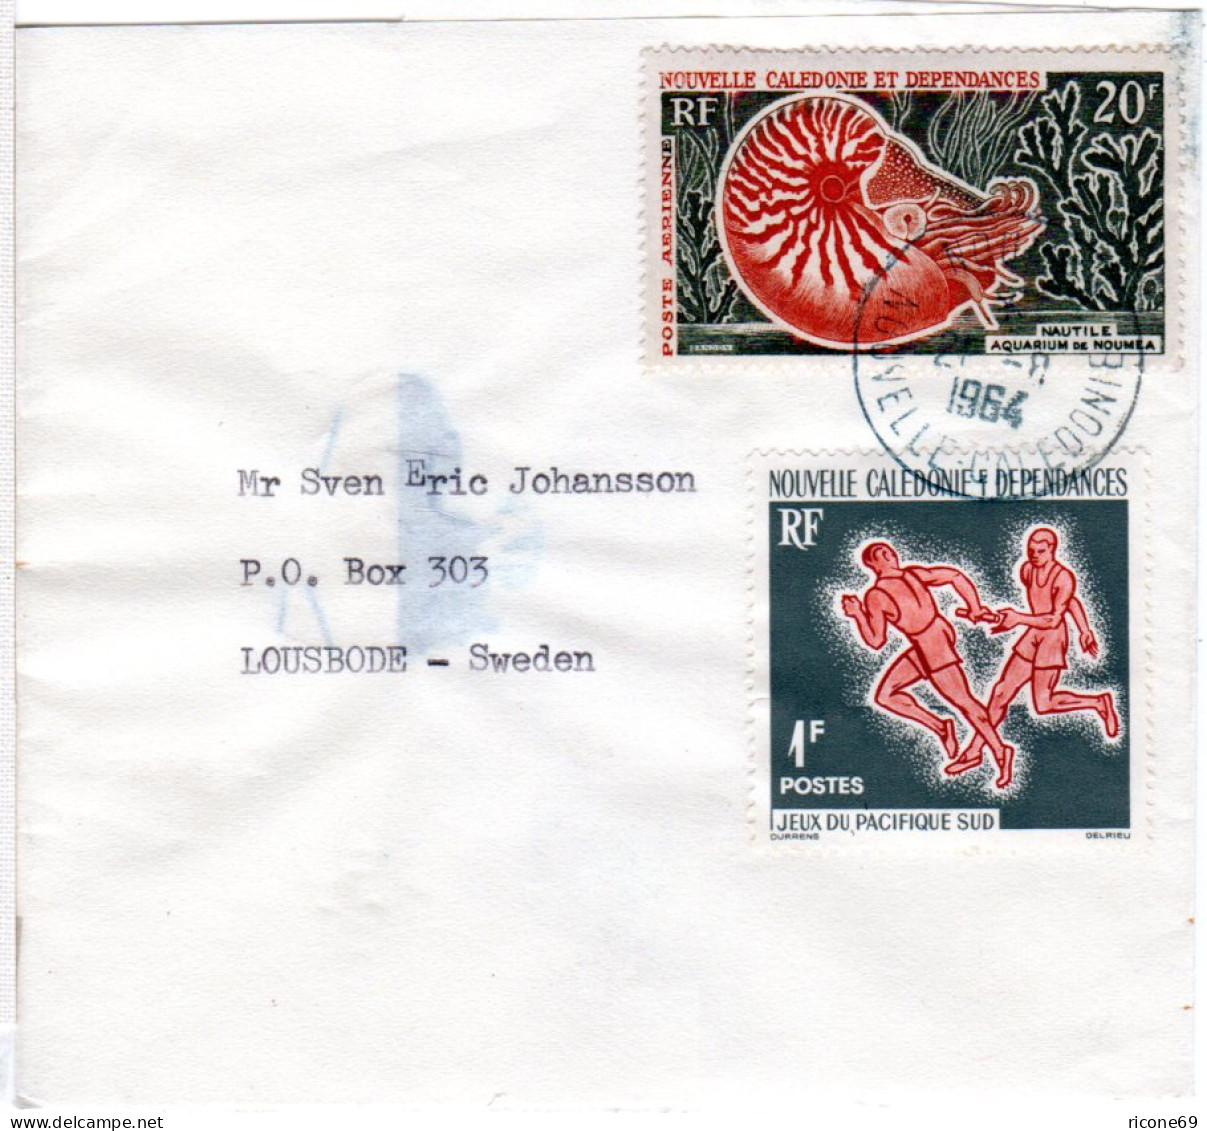 Nouvelle Caledonie 1964, 1+20 F Auf Drucksachen Streifband V. Noumea N. Schweden - Sonstige - Ozeanien